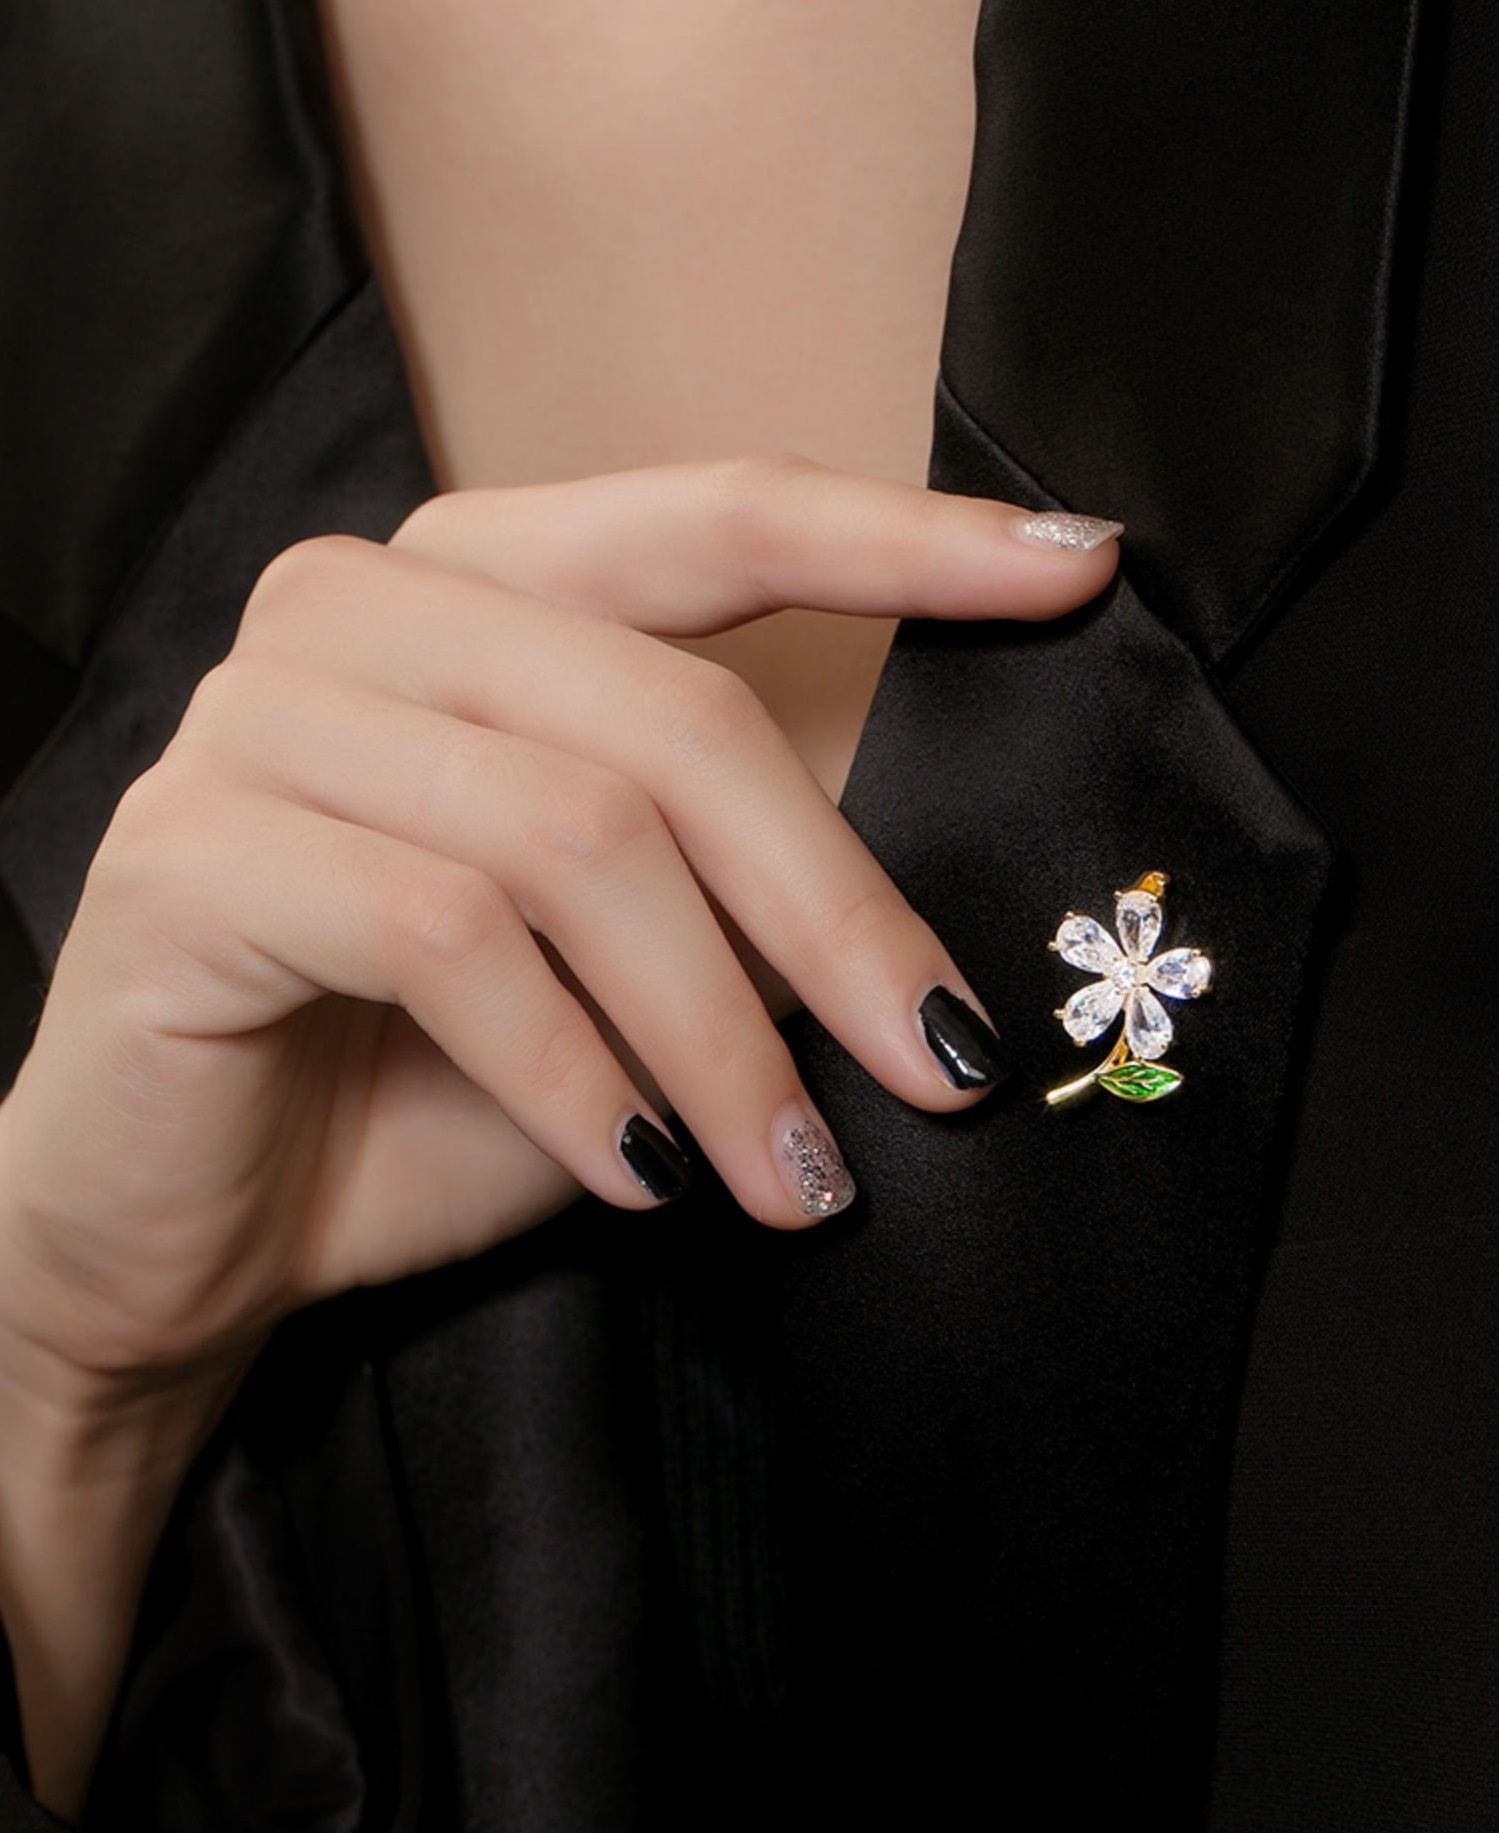 小雛菊鋯石胸針女高級感精緻小巧設計秋冬服飾大衣別針配件禮物